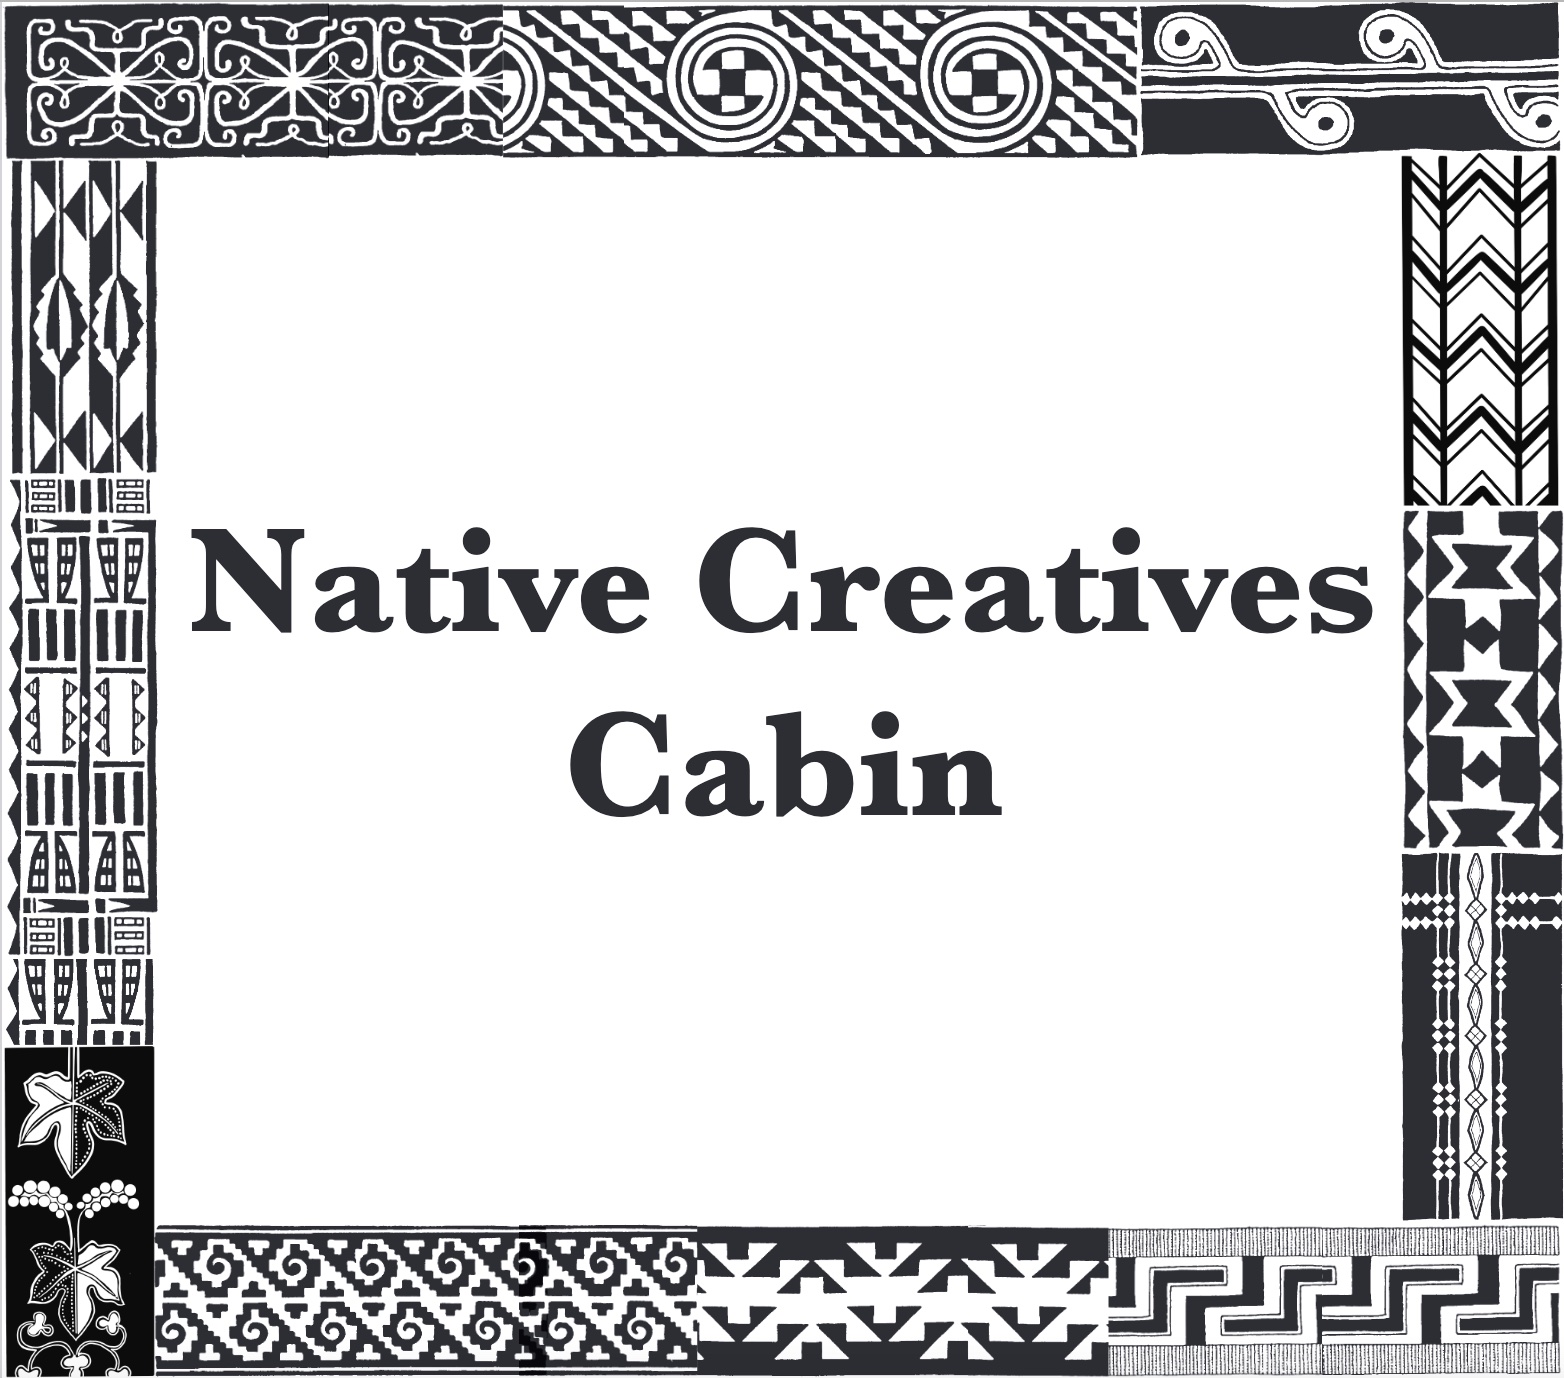 Native Creatives Cabin Sign